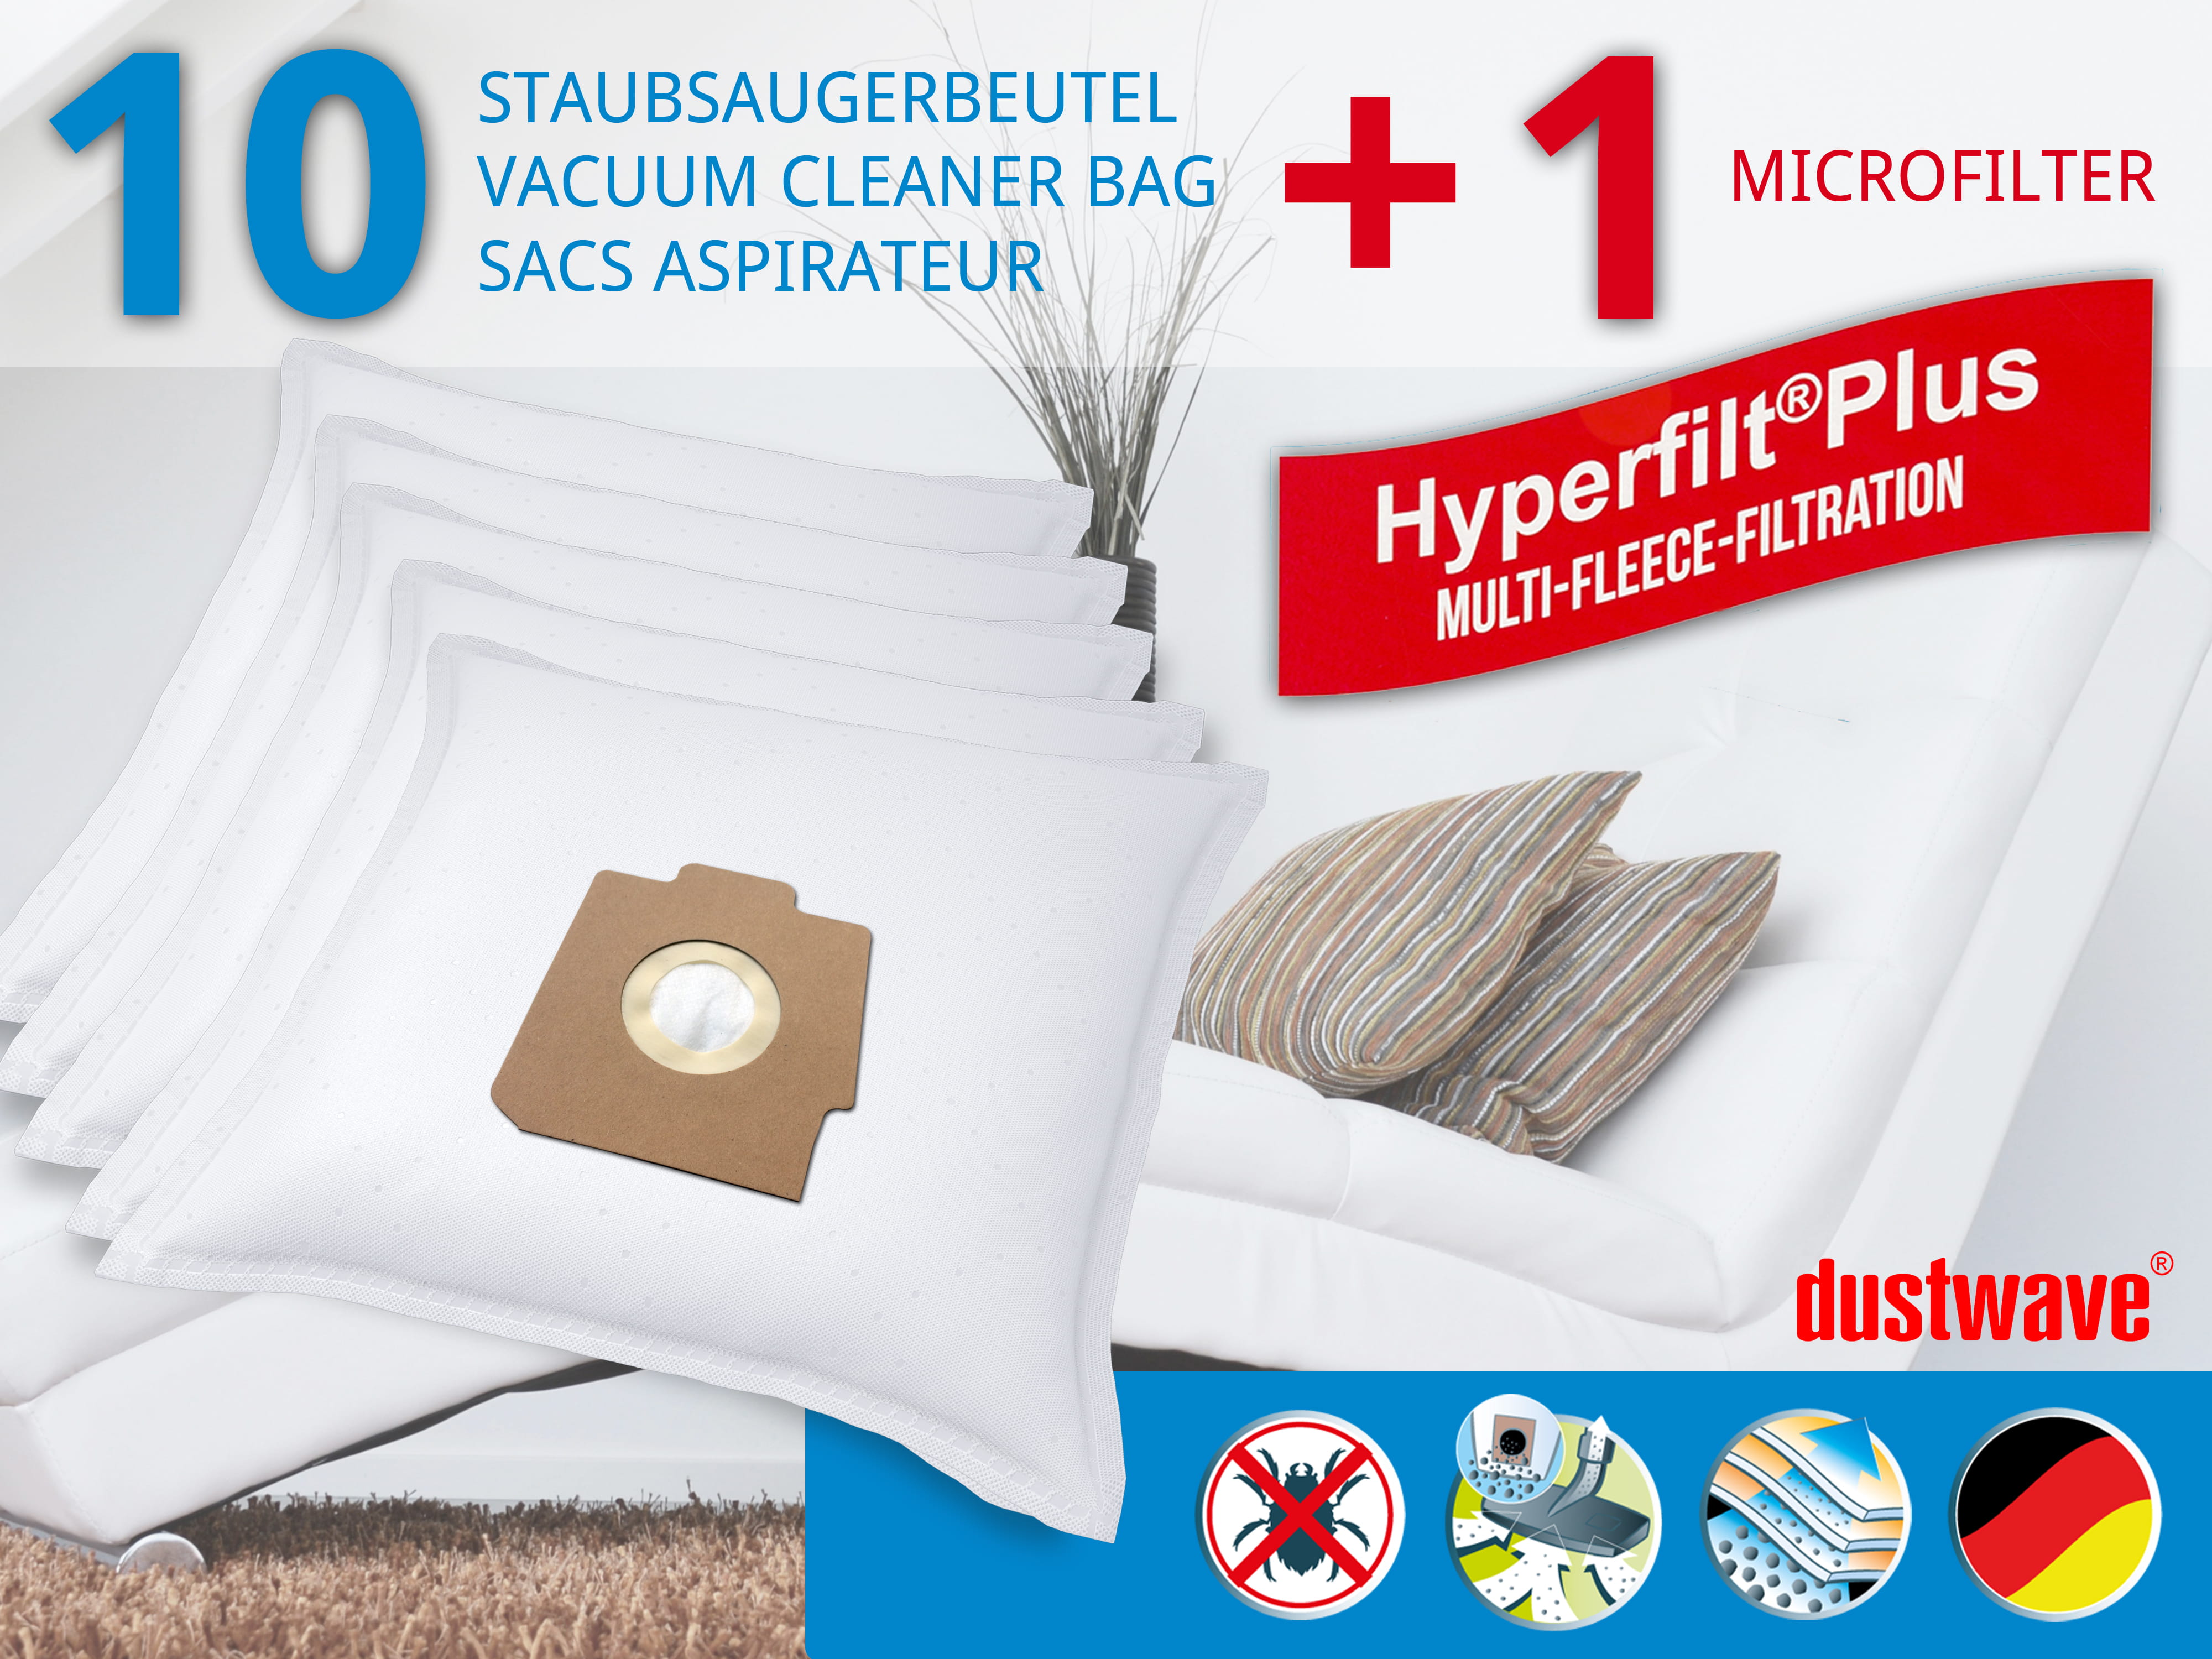 Dustwave® 10 Staubsaugerbeutel für Hoover S3X28 / TRS3X28 - hocheffizient, mehrlagiges Mikrovlies mit Hygieneverschluss - Made in Germany